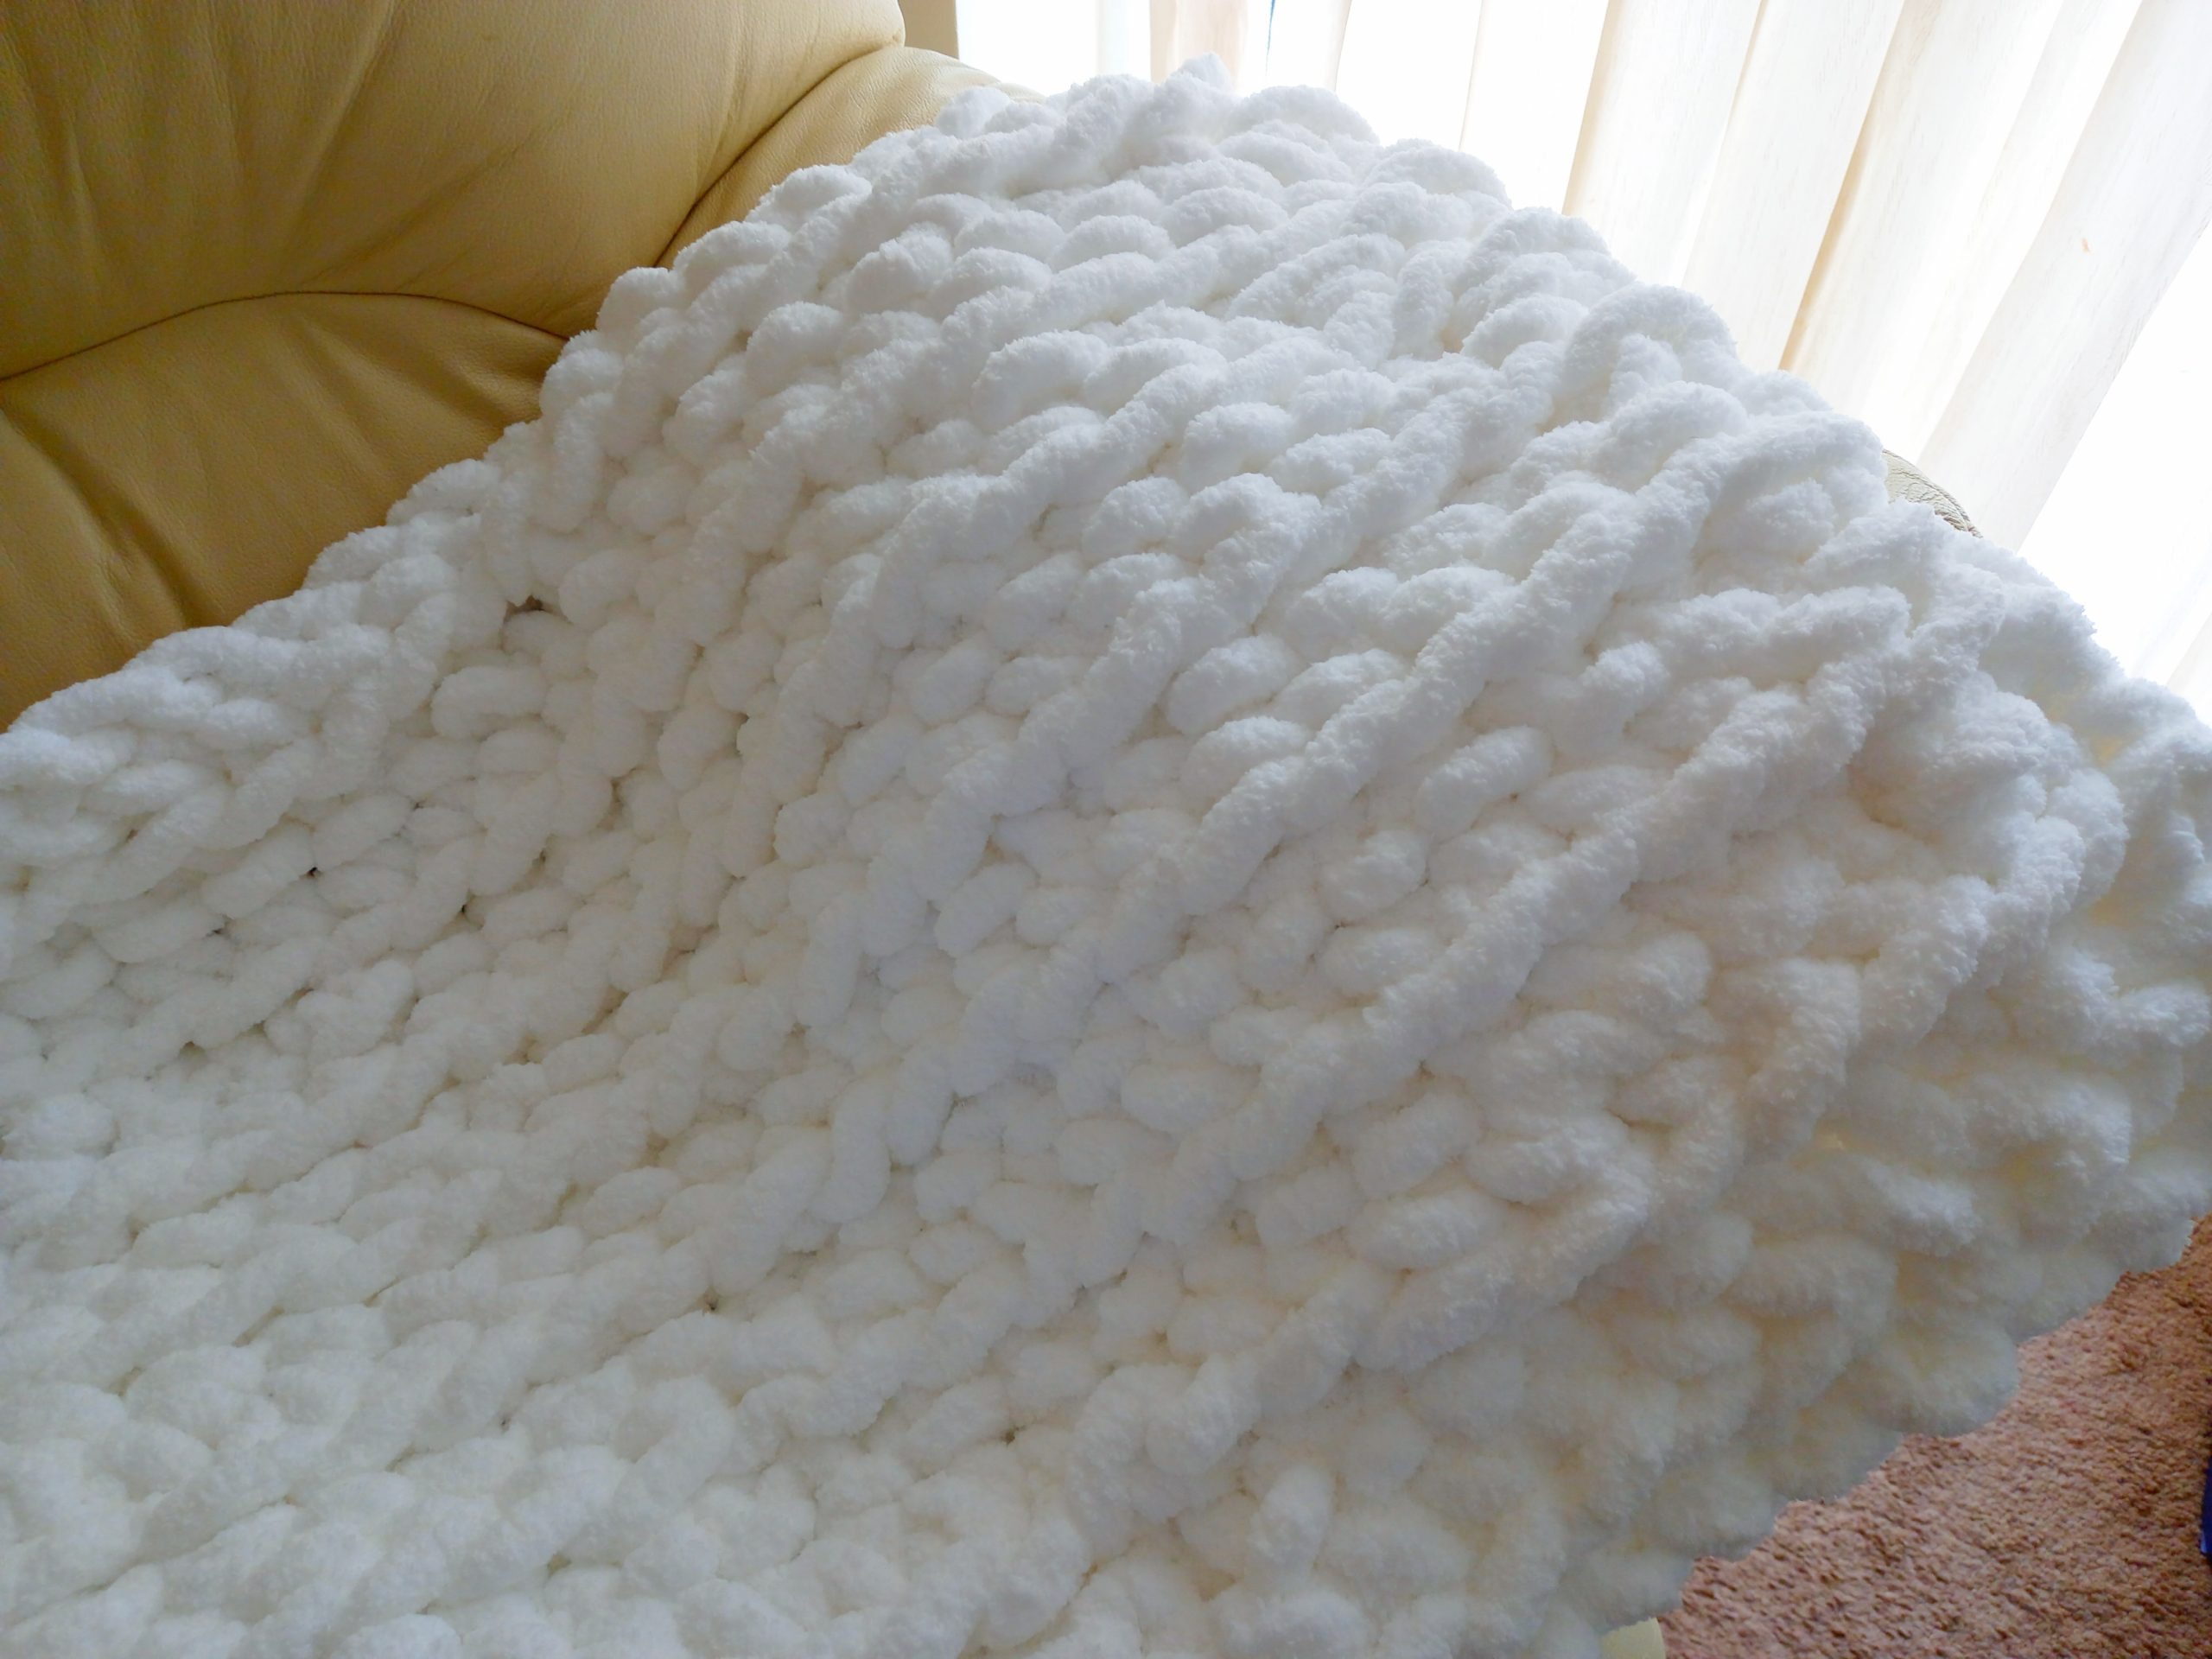 Free Loop Yarn Finger Knitting Blanket Pattern + Tutorial for Beginners